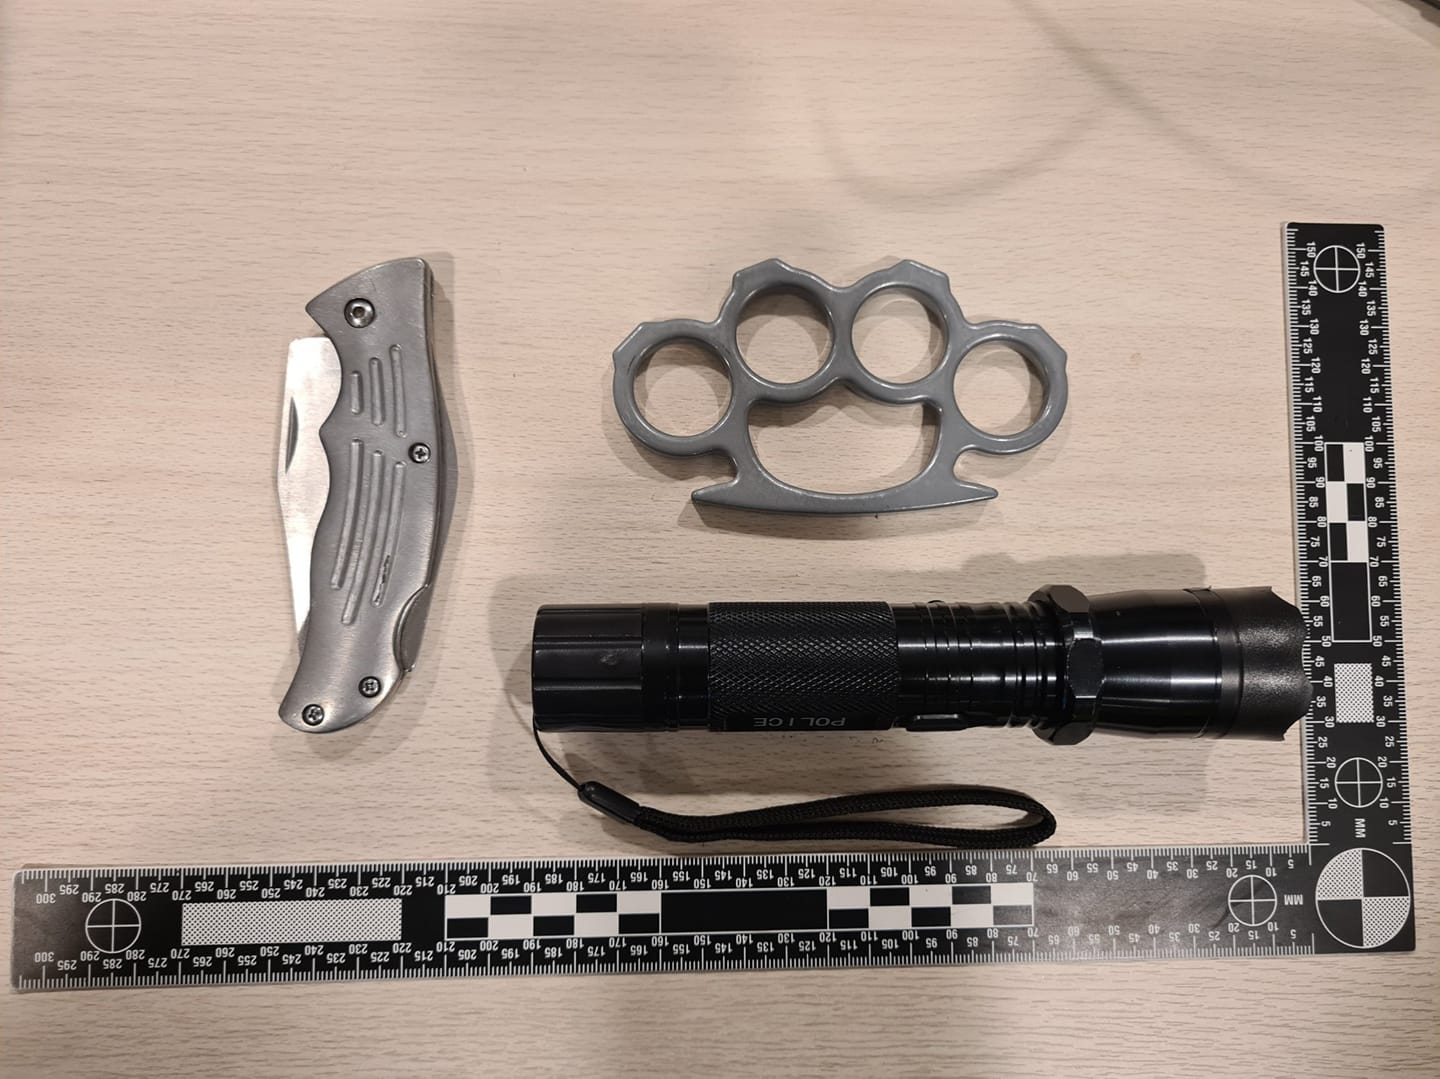 Jongens (11 en 14 jaar) met mes, boksbeugel en stroomstootwapen aangehouden in Dordrecht - ZHZActuee